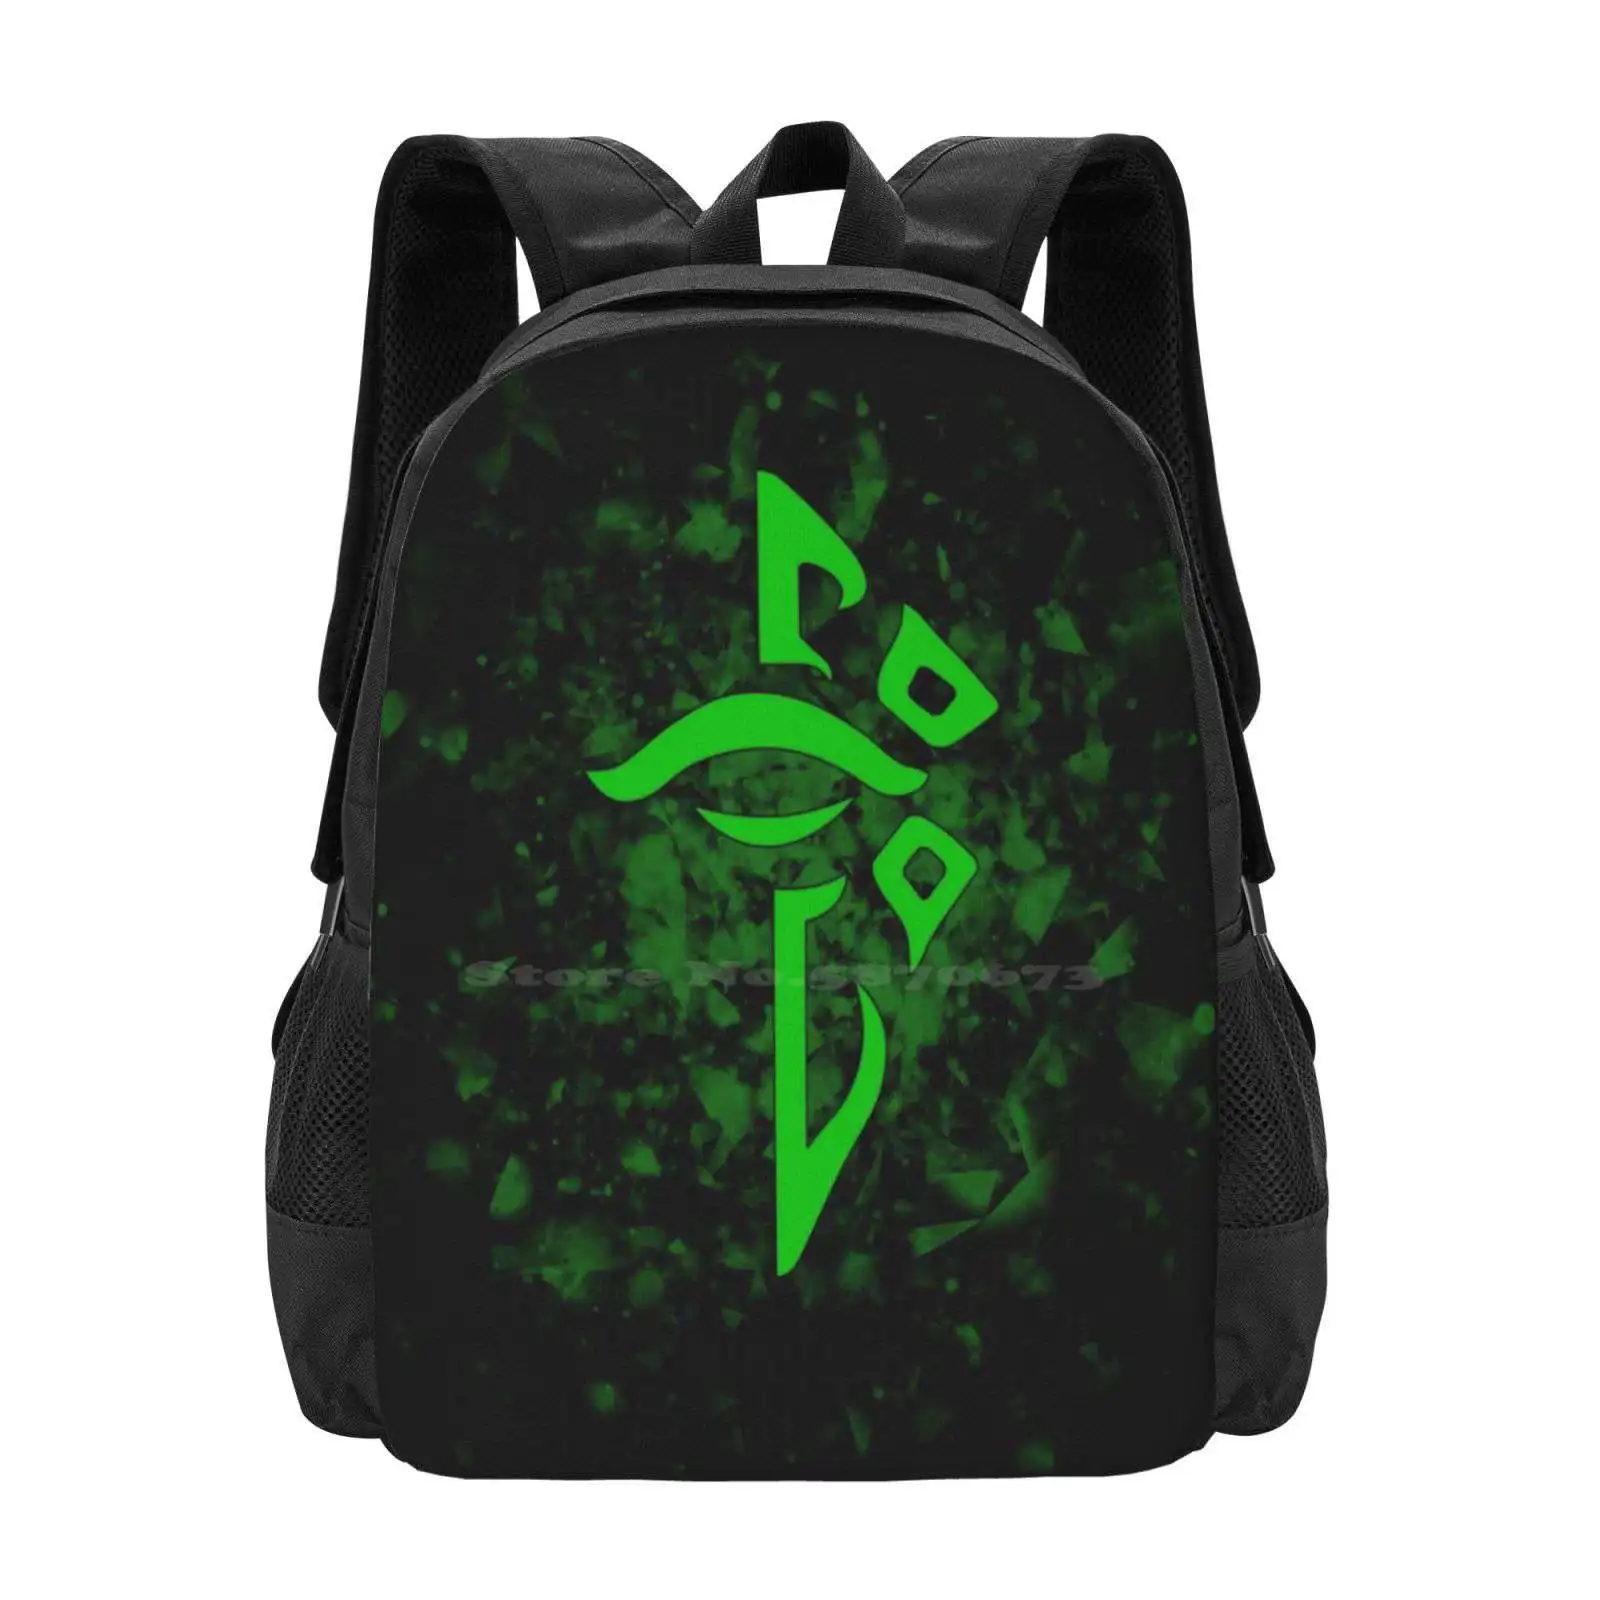 Рюкзак с 3D-принтом, студенческая сумка, рюкзак с просветленным сопротивлением проникновению, Google Niantic Illuminati Resistance